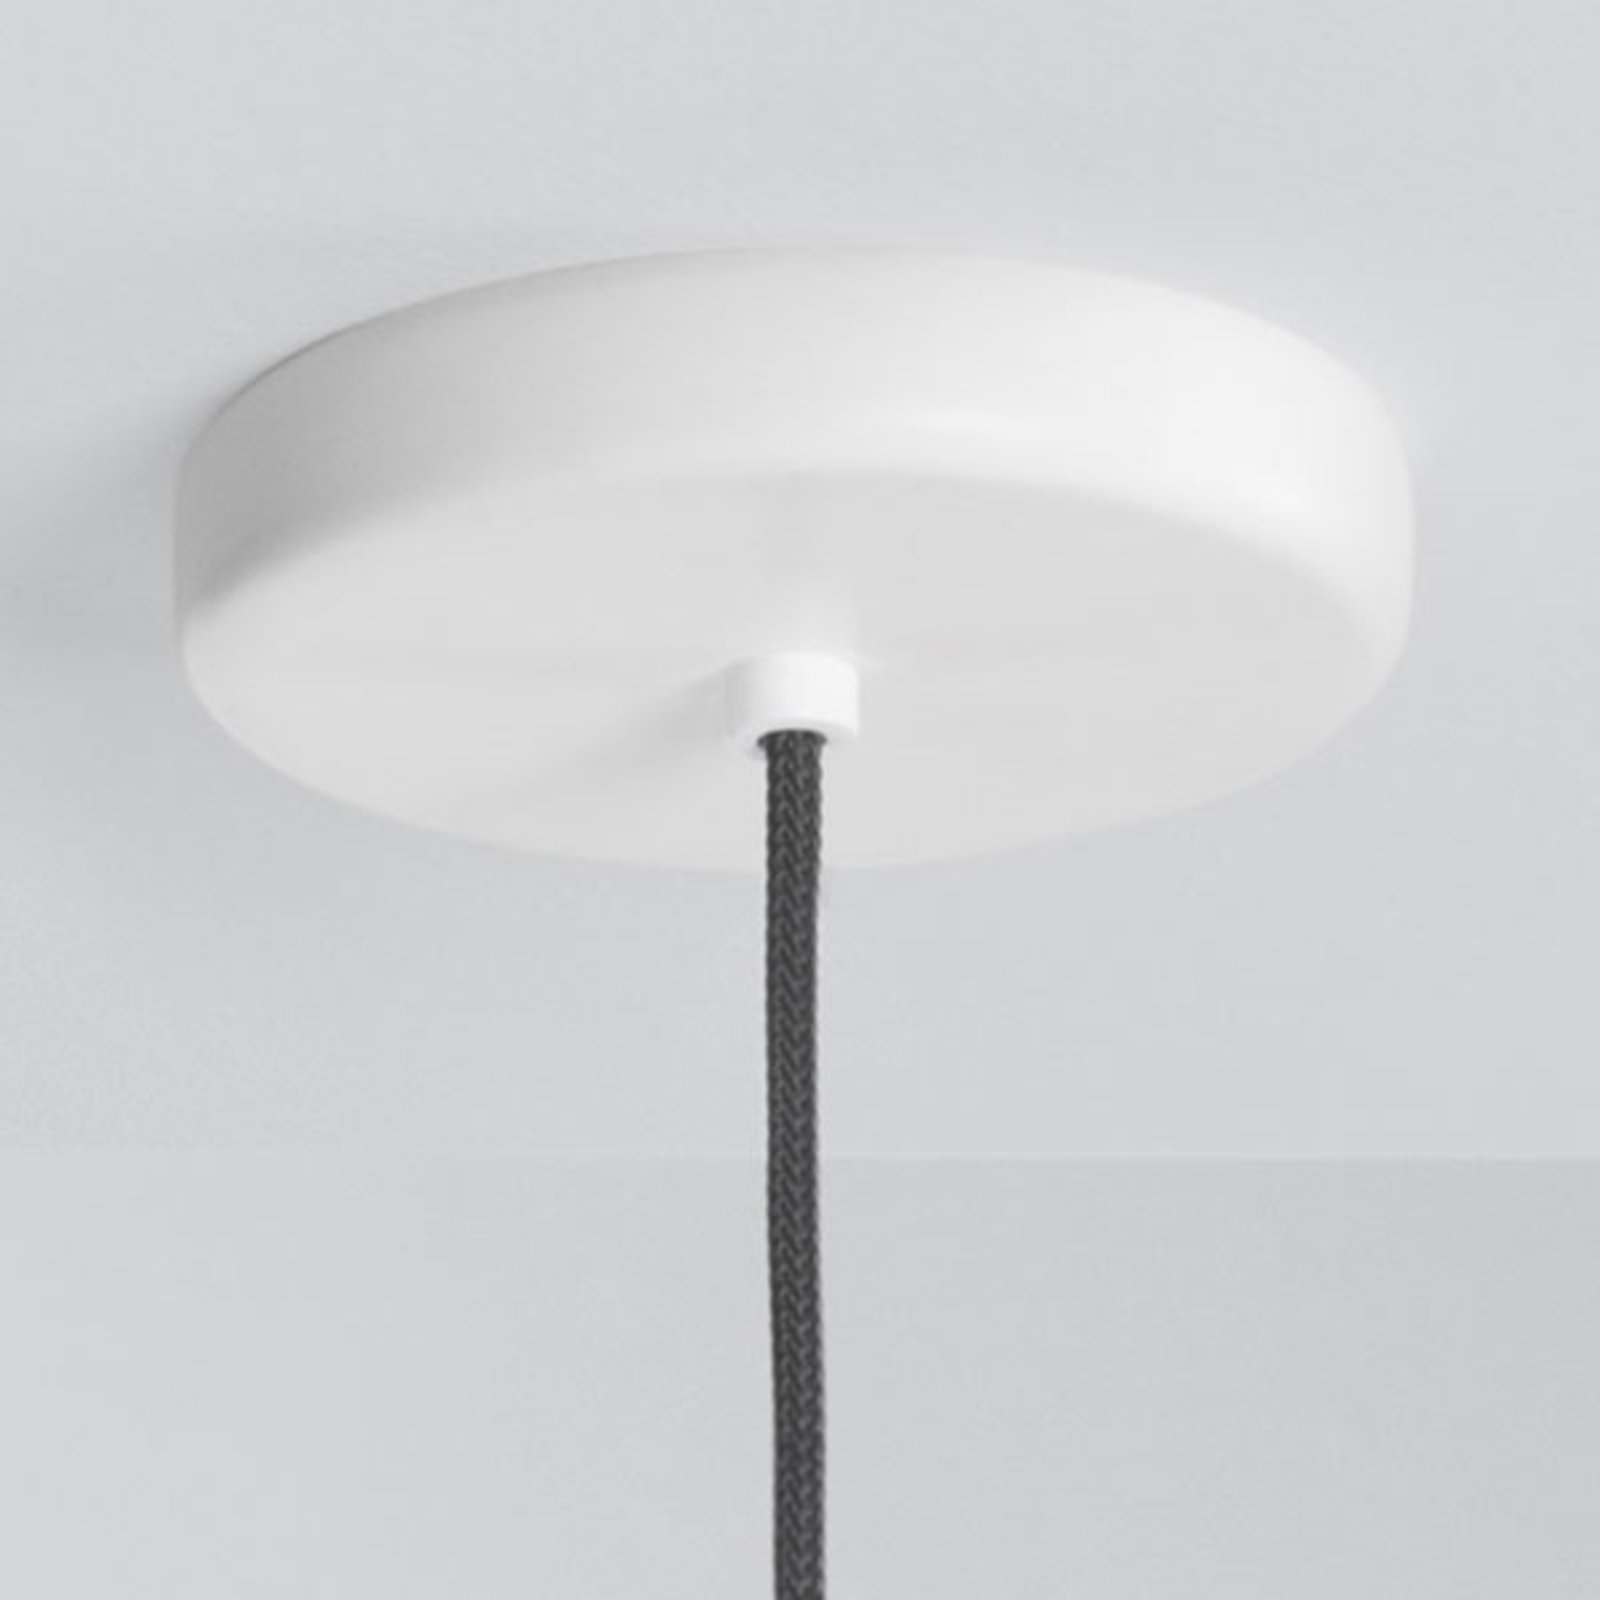 Fabbian Claque LED závesné svietidlo 20 cm biele